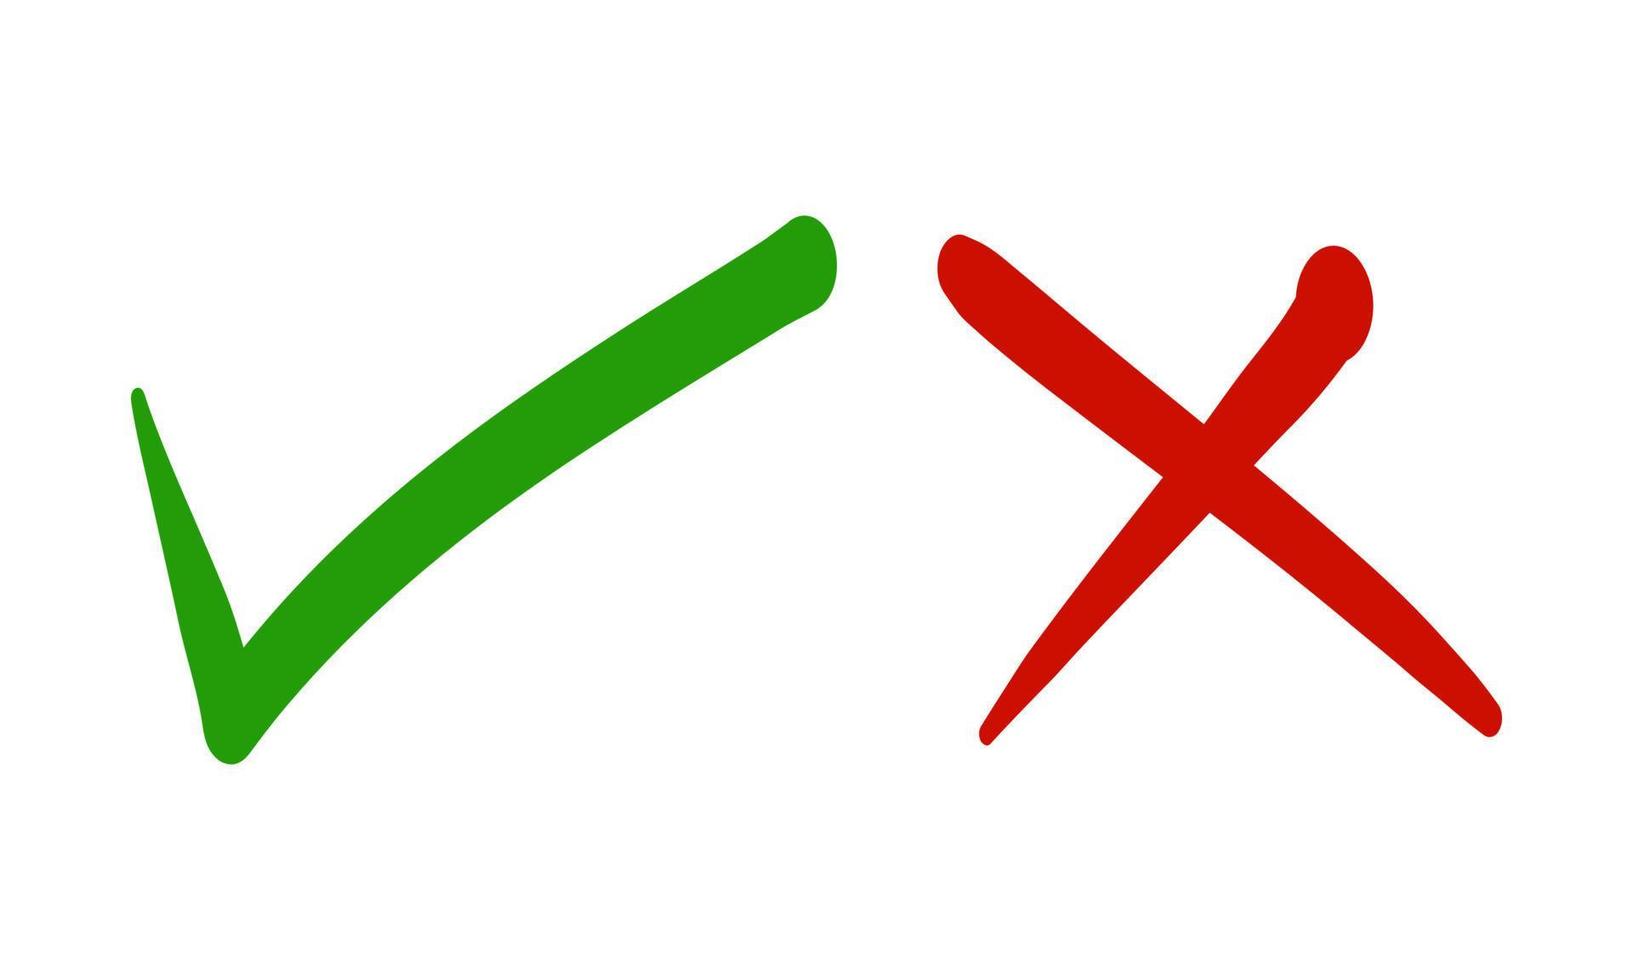 Häkchen und Kreuzsymbol gesetzt. Häkchensymbol in grüner und roter Farbe. Vektor-Illustration vektor